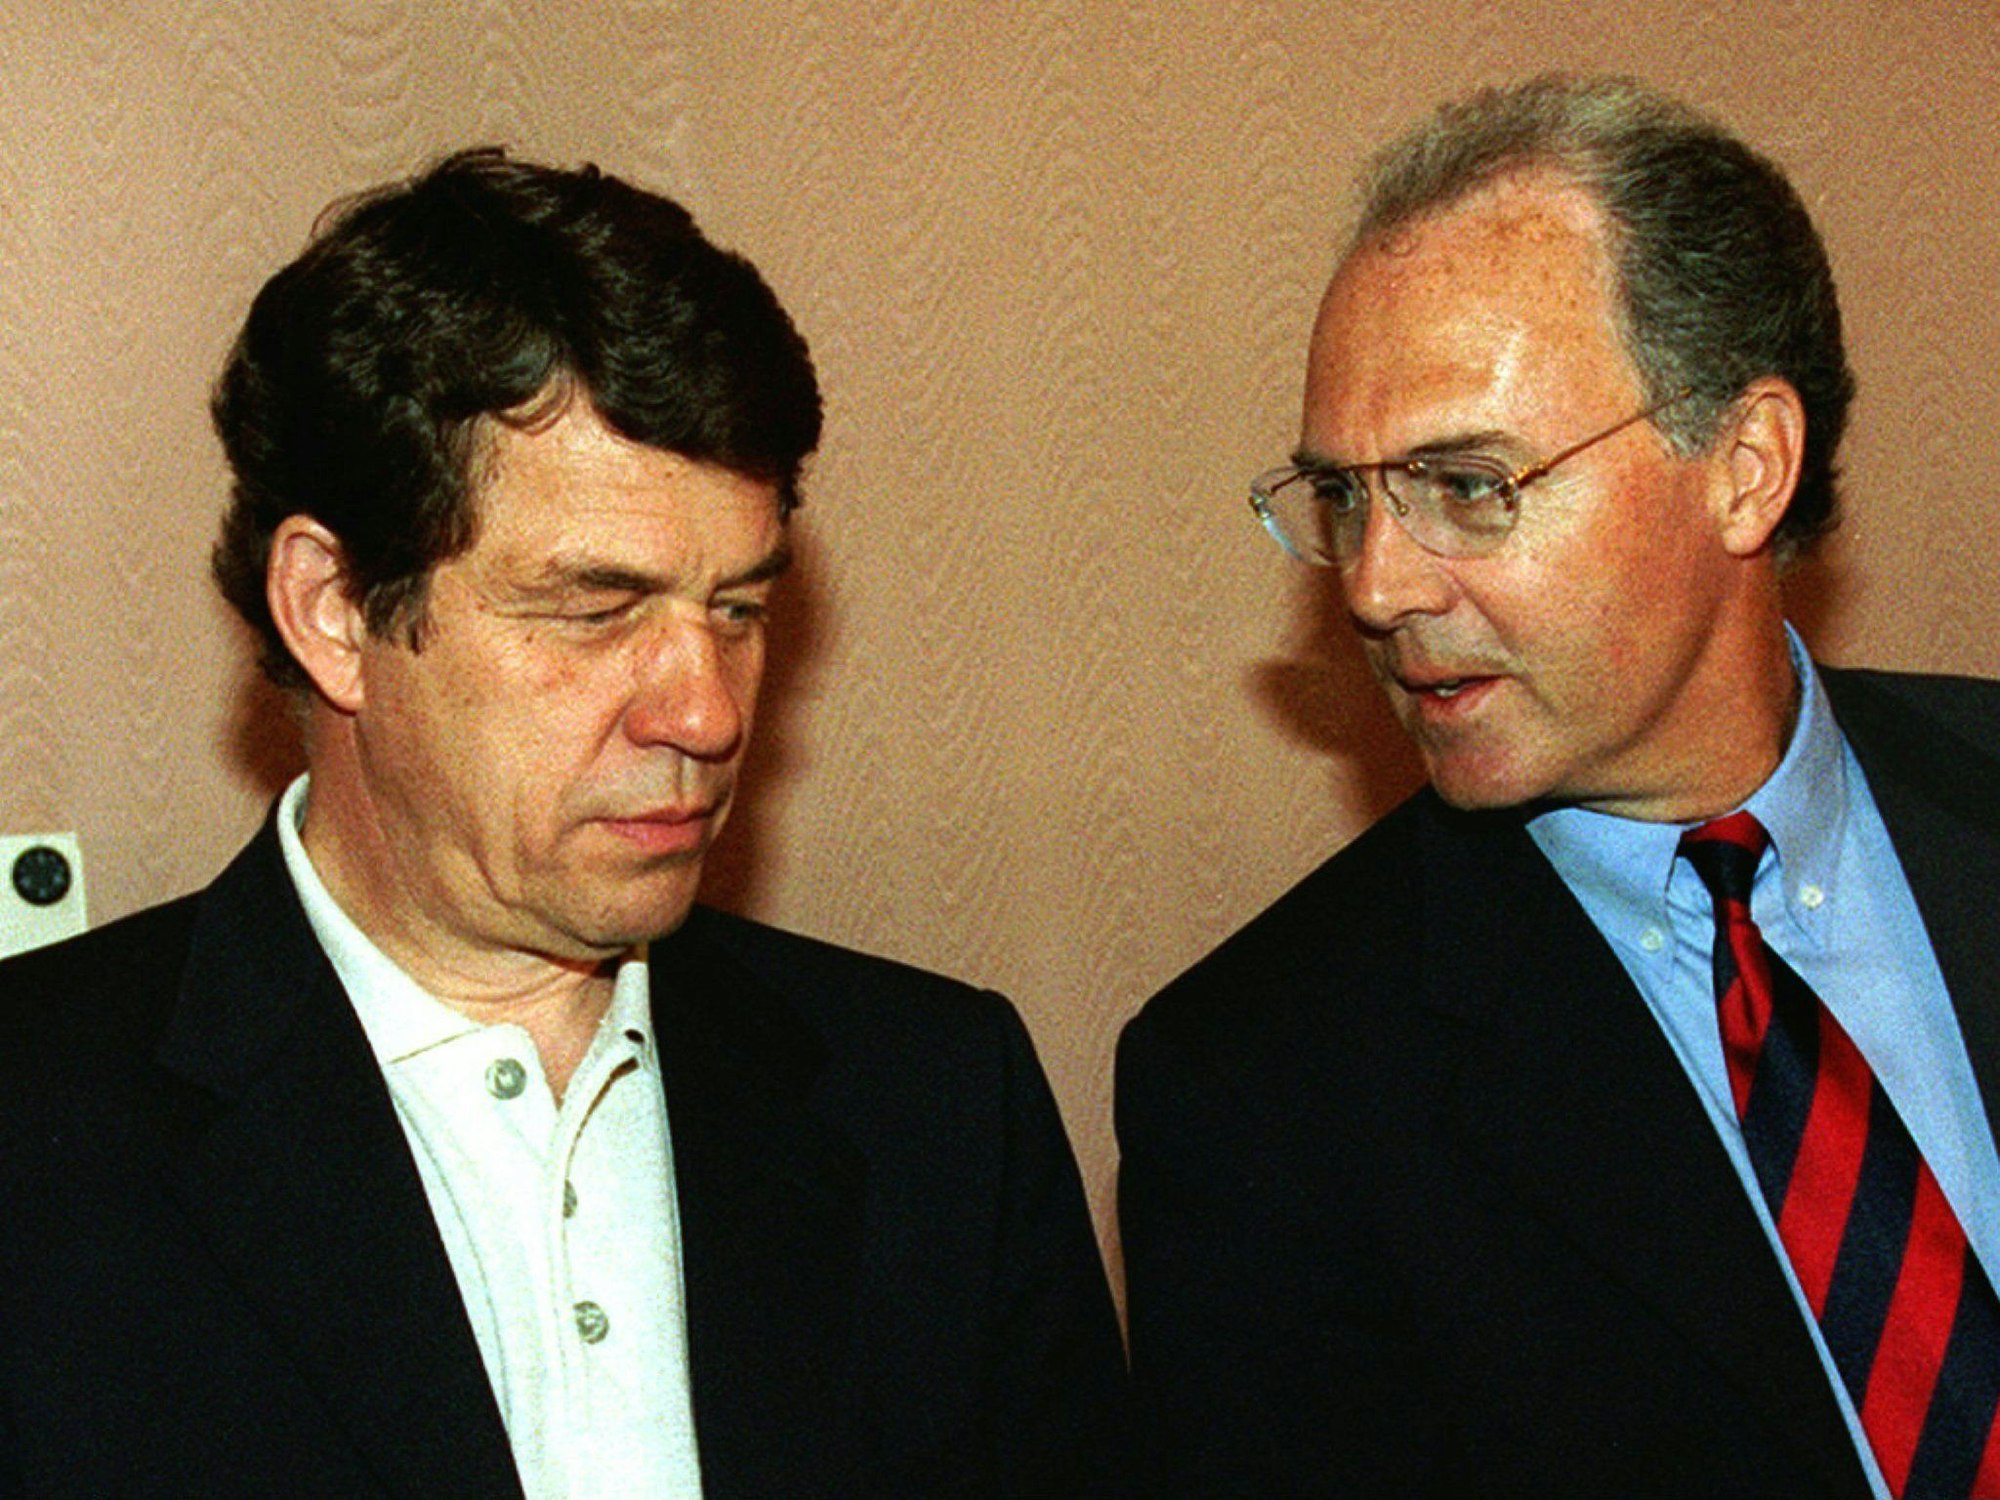 FC Bayerns Präsident Franz Beckenbauer und Trainer Otto Rehhagel während einer Pressekonferenz am 15. April 1996 vor dem UEFA-Cup-Spiel in Barcelona.